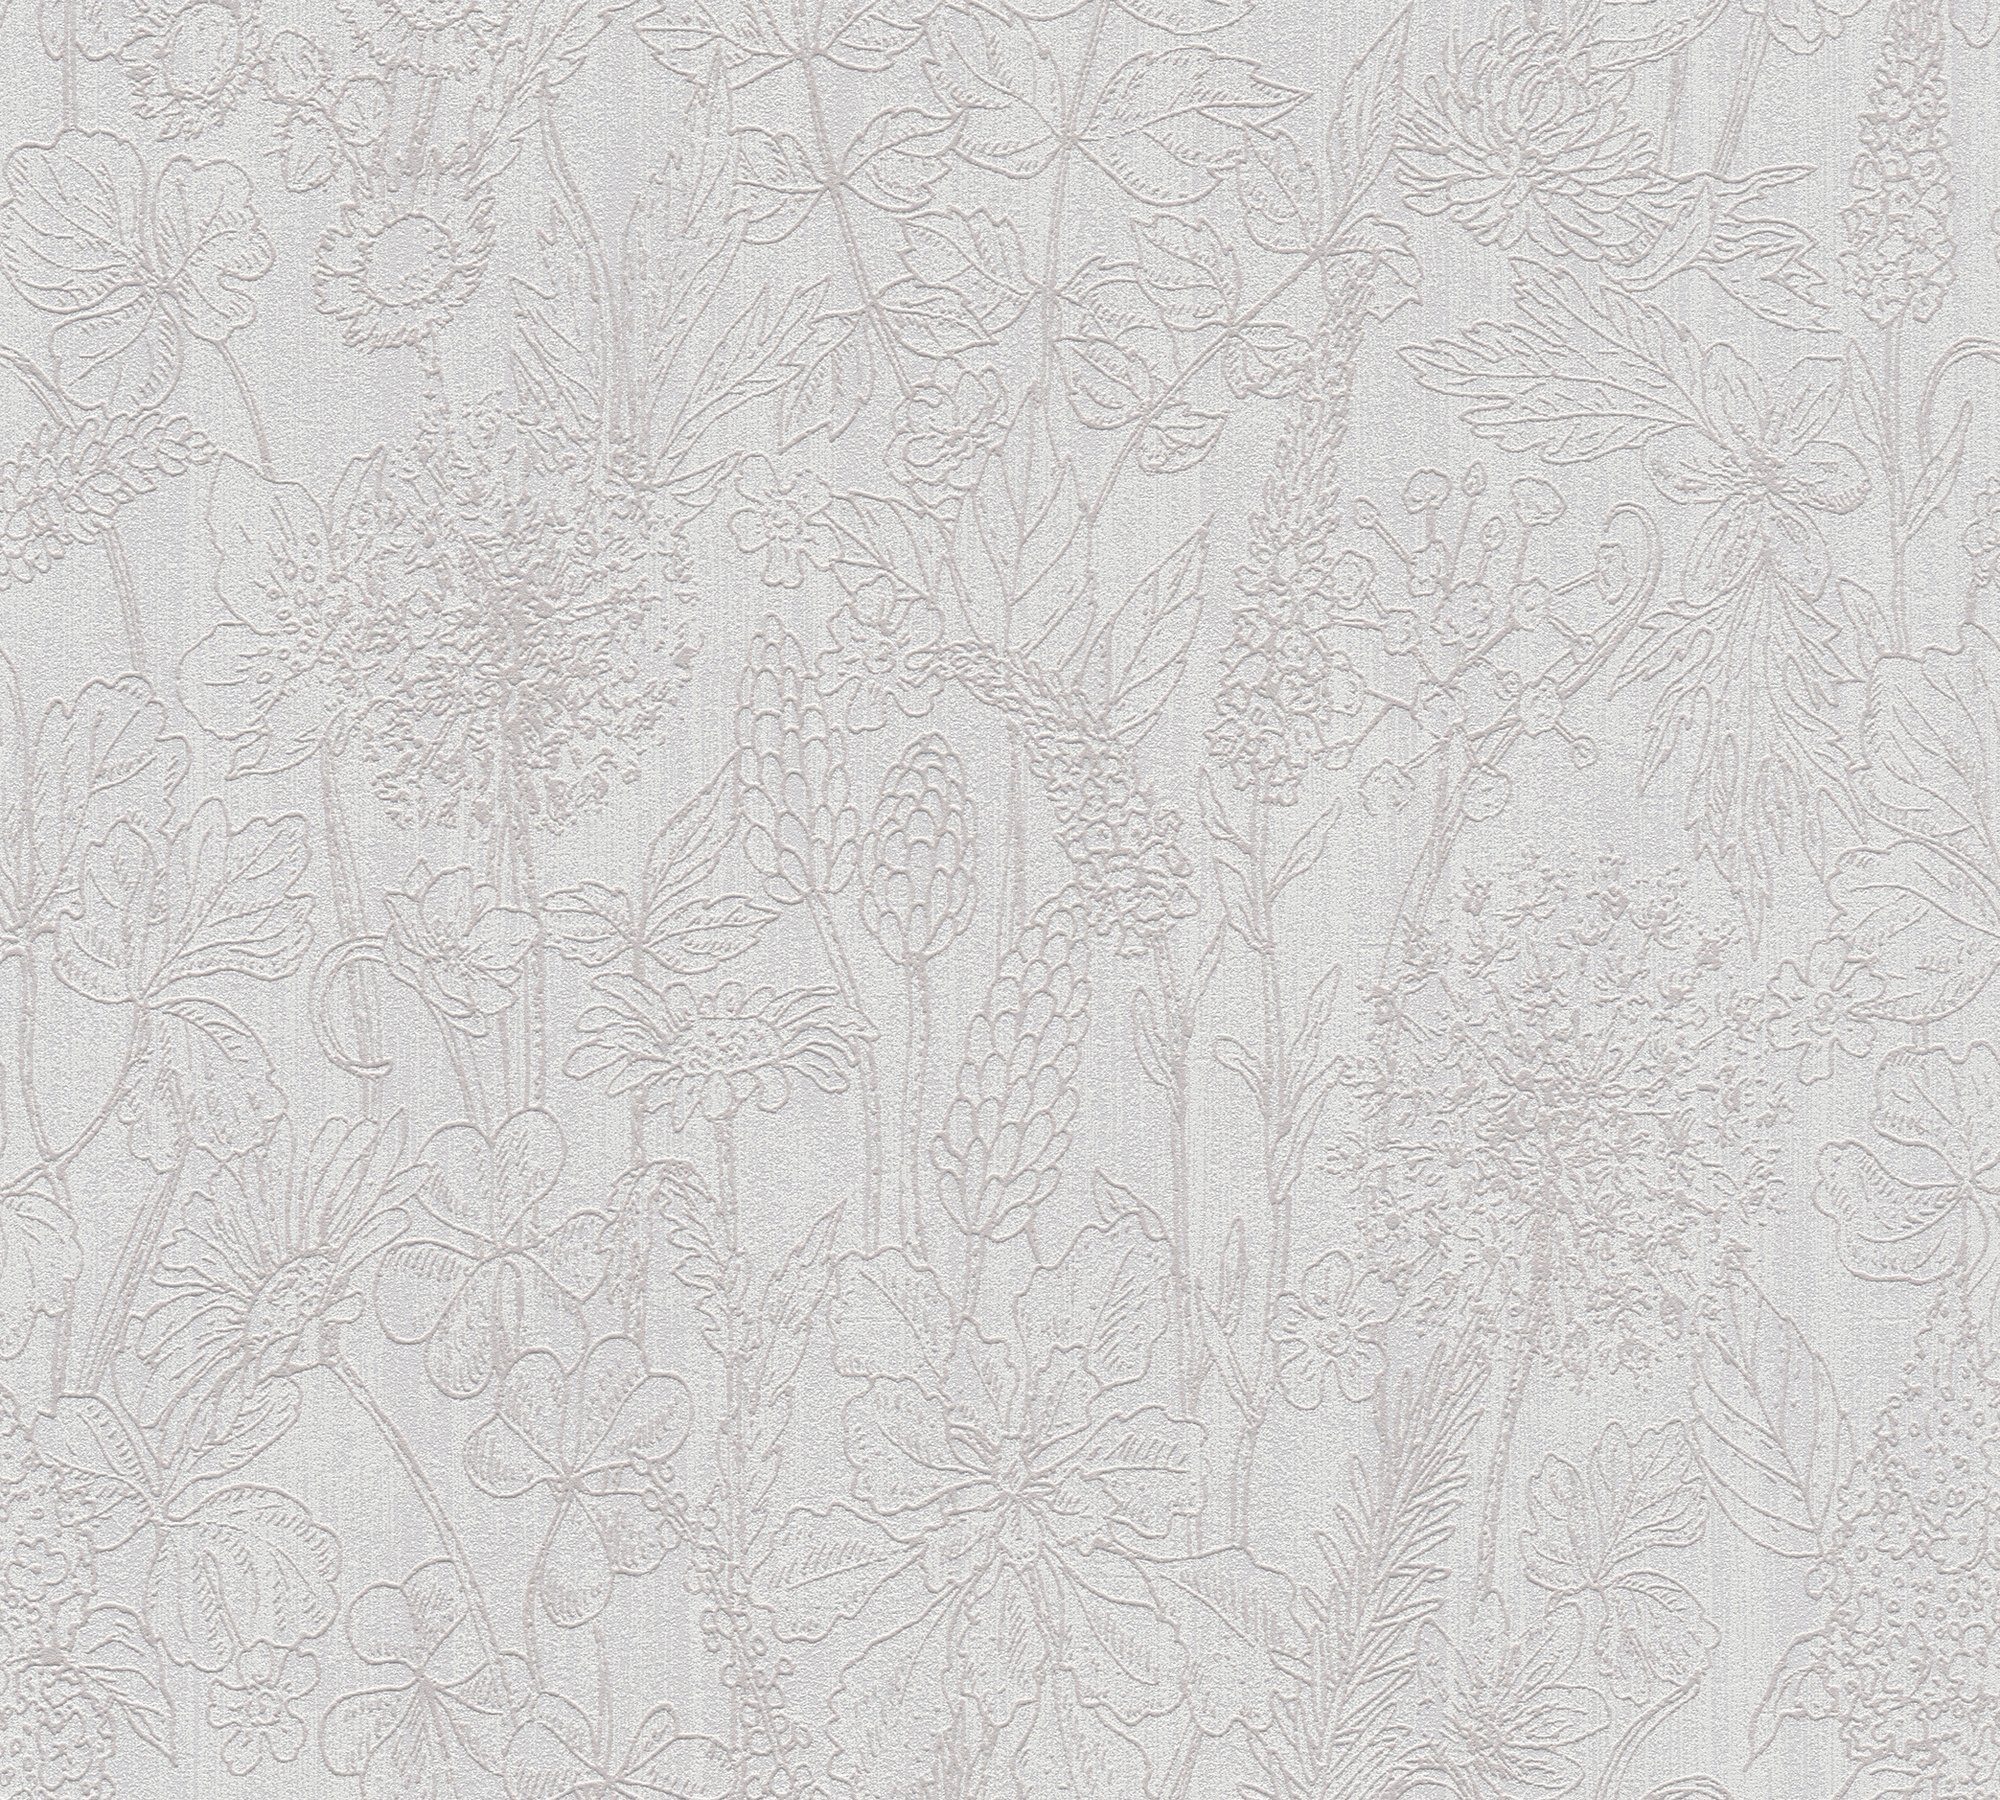 Glitzertapete Blumen A.S. grau/weiß floral, Création Attractive, Tapete botanisch, Vliestapete